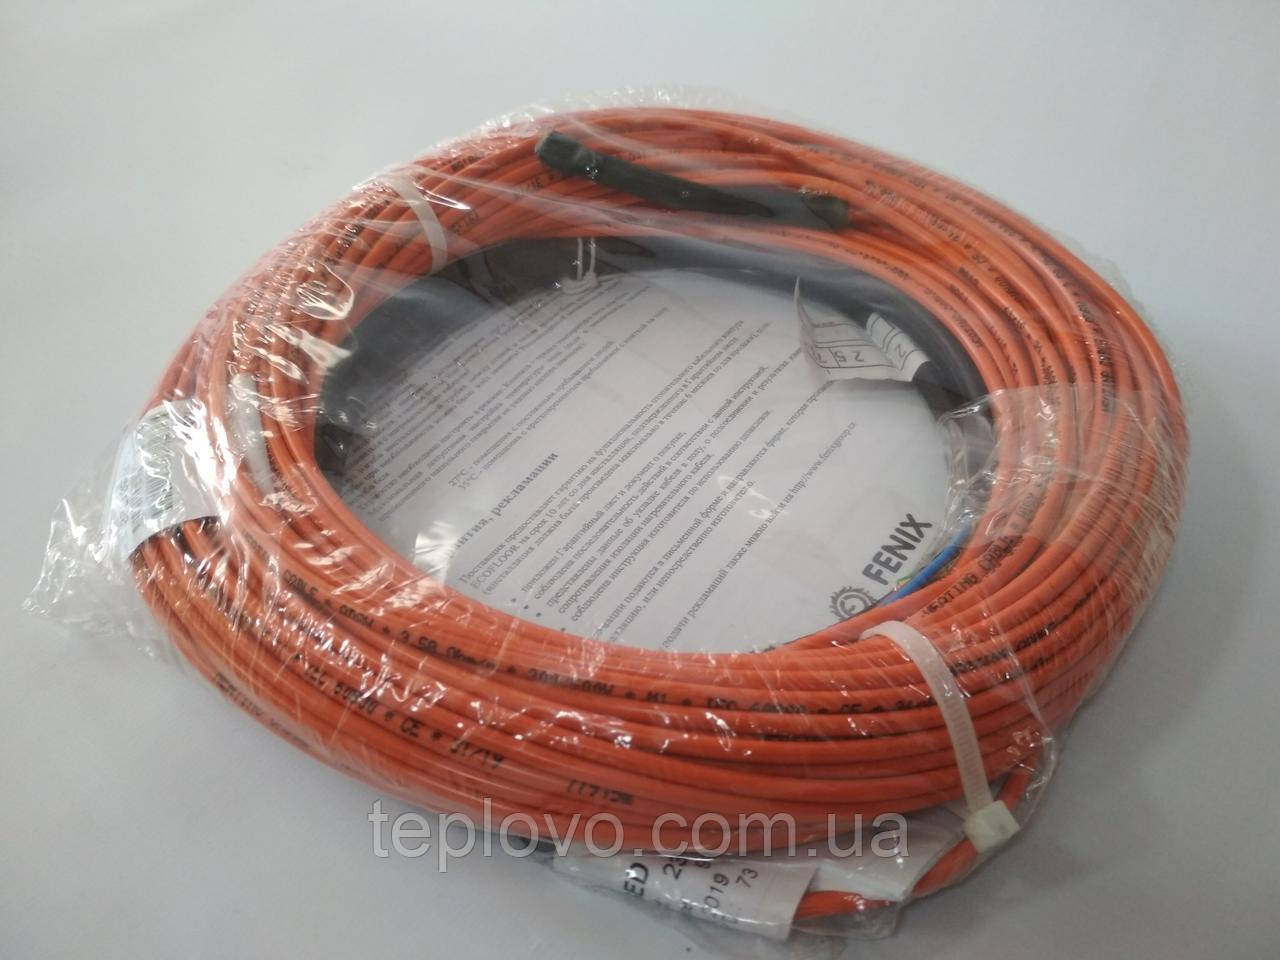 Двужильный нагревательный кабель Fenix ADSV18 320 Вт (1,5 - 2,2 м2), теплый пол под плитку